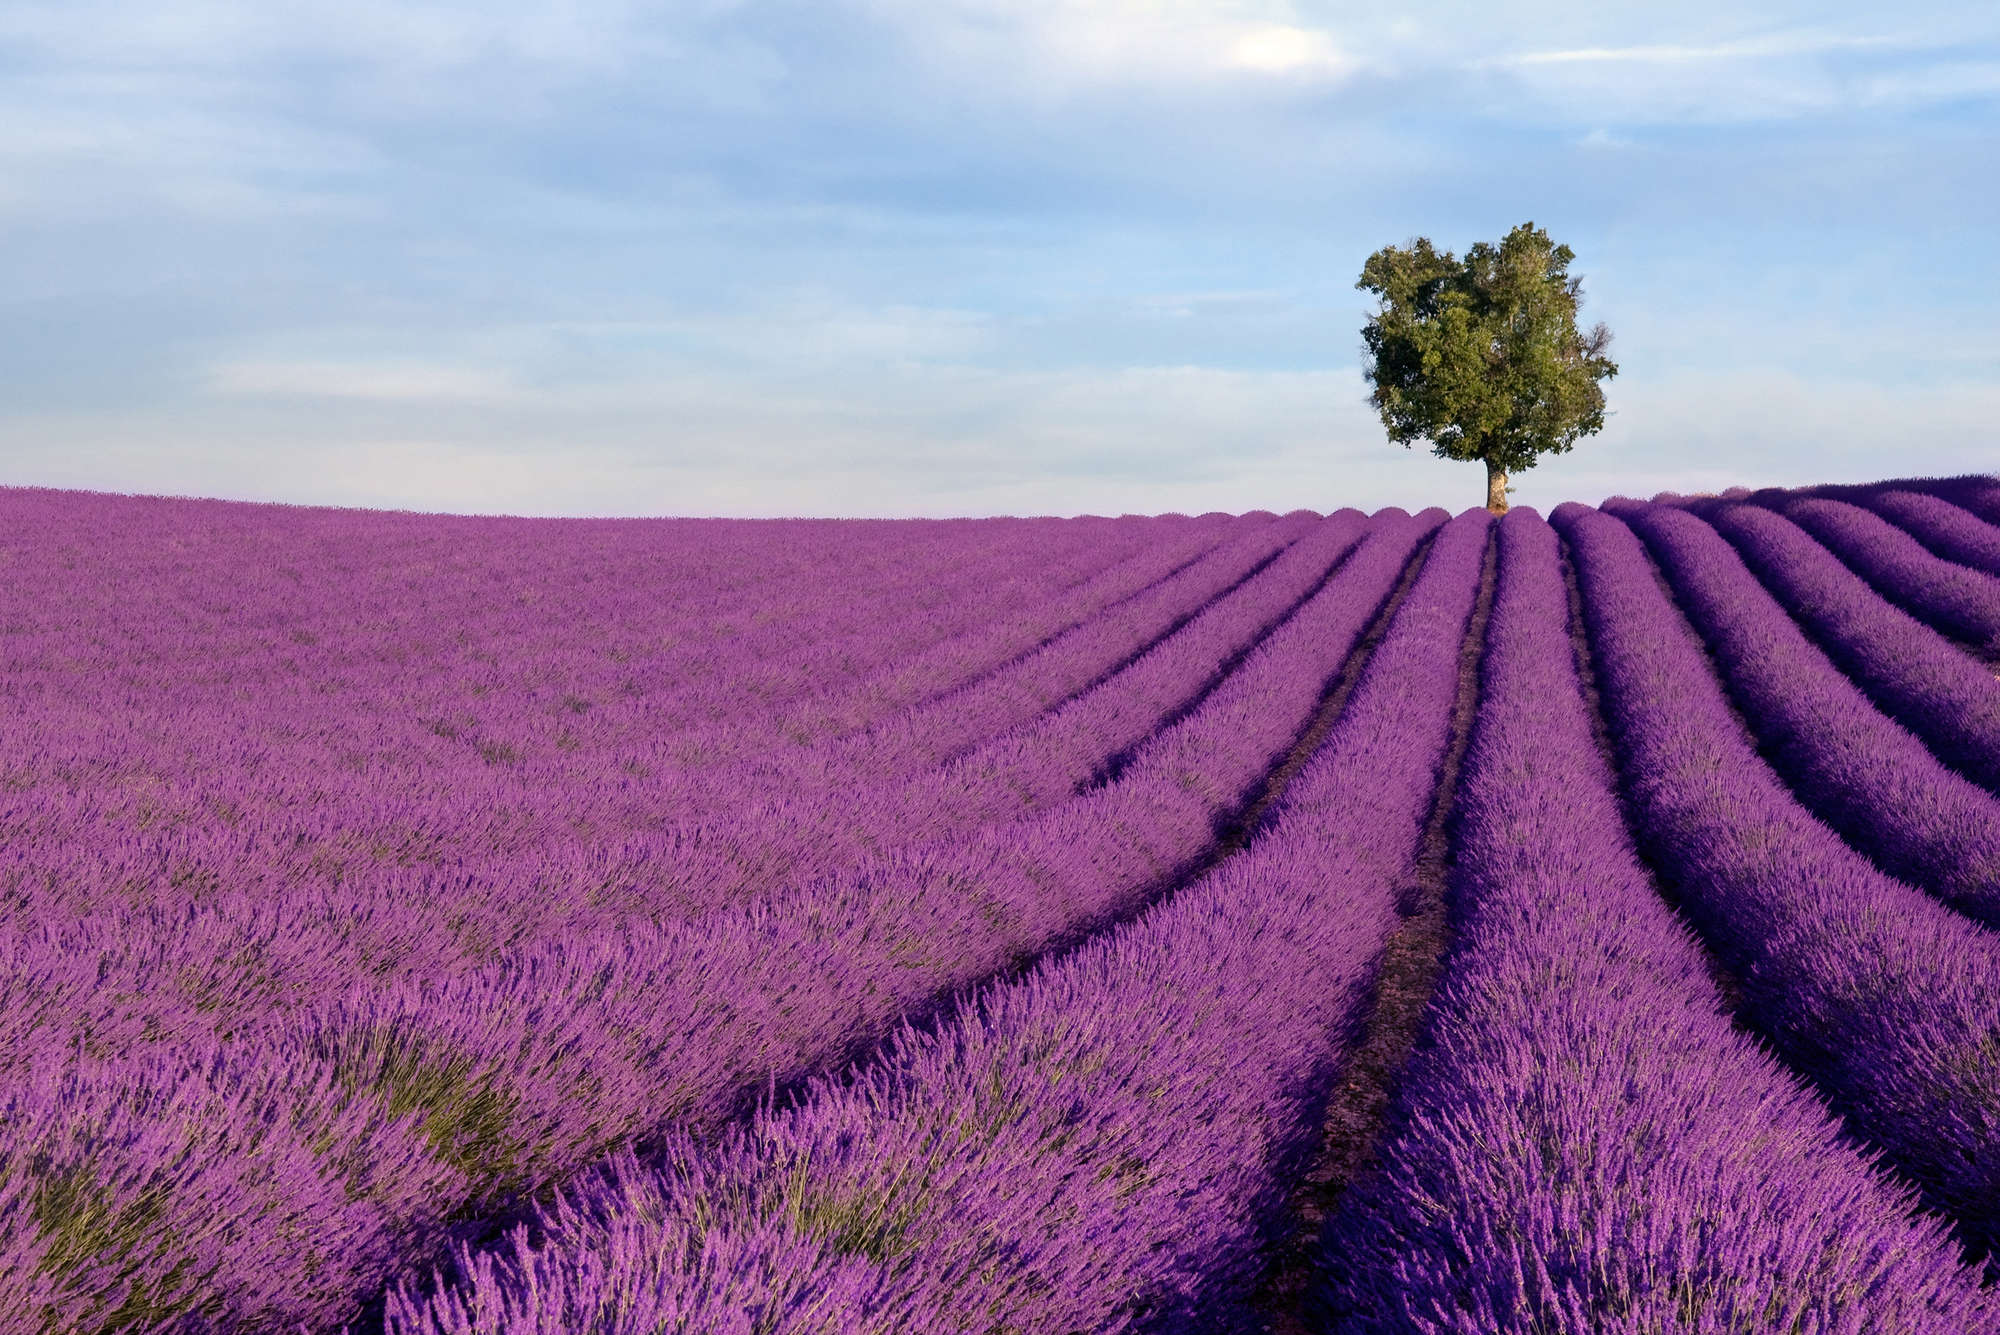             Natur Fototapete Lavendelfeld – Perlmutt Glattvlies
        